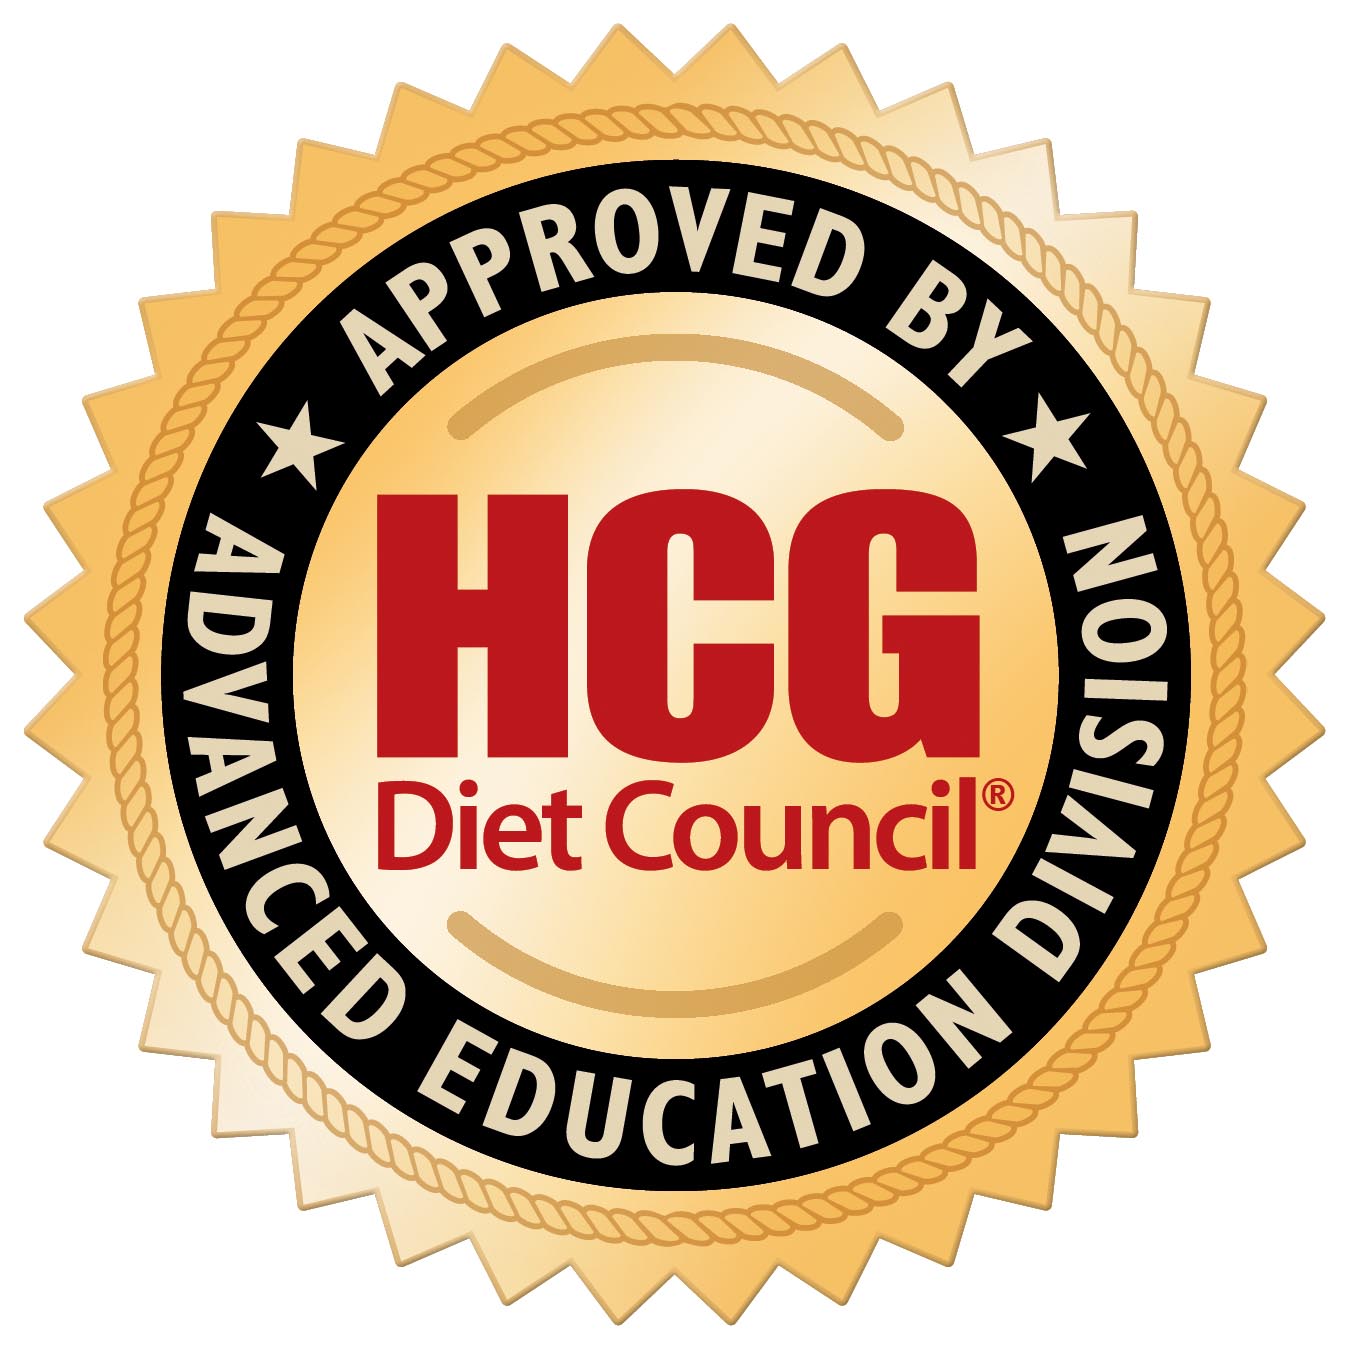 HCG Diet Council Advanced Education Division